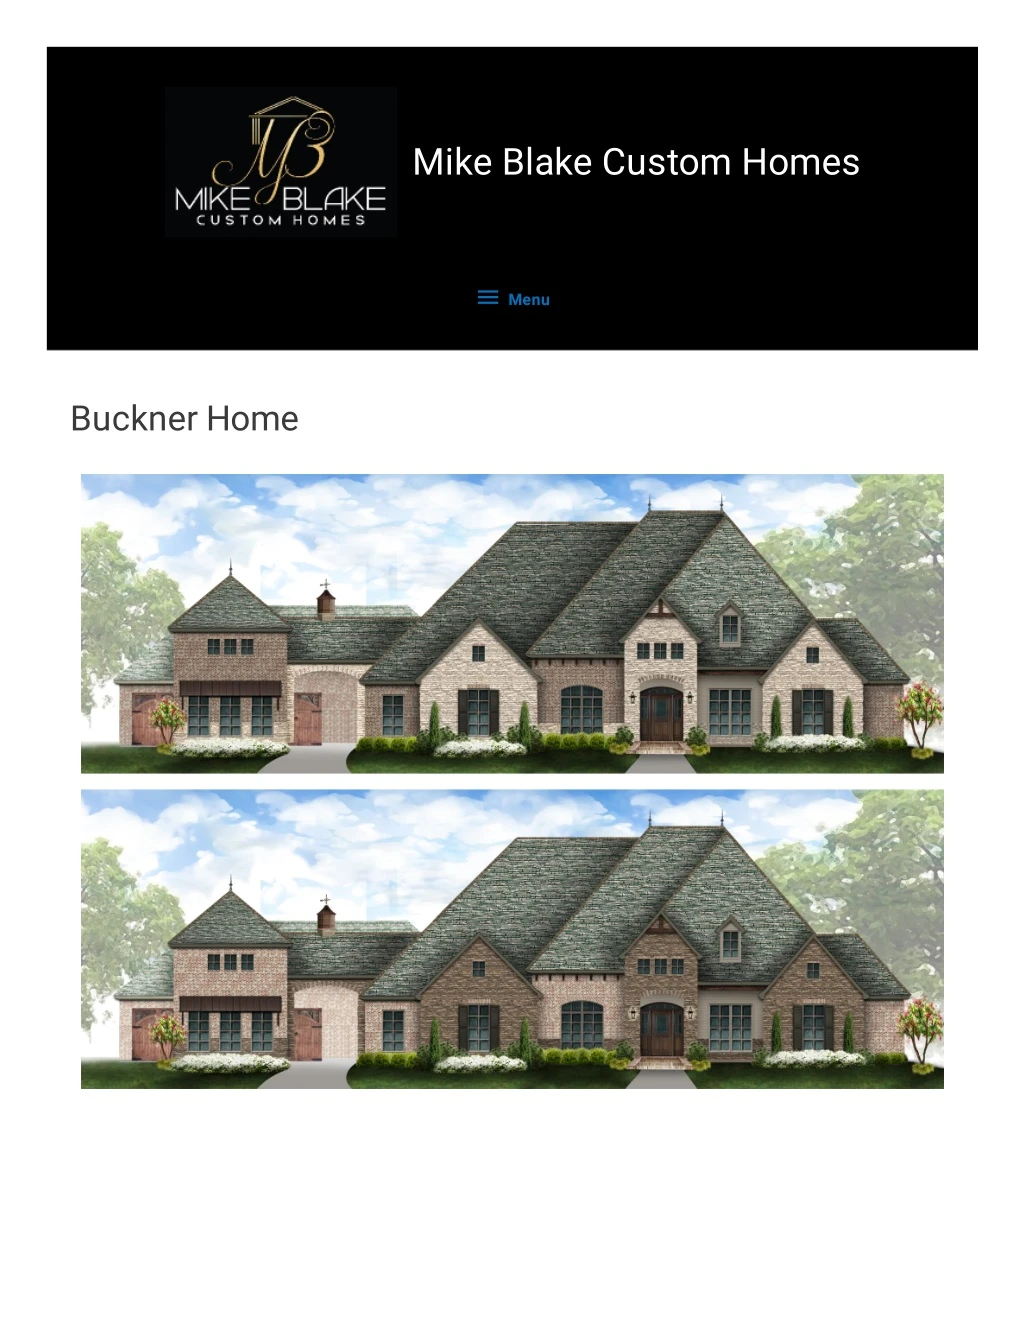 mike blake custom homes